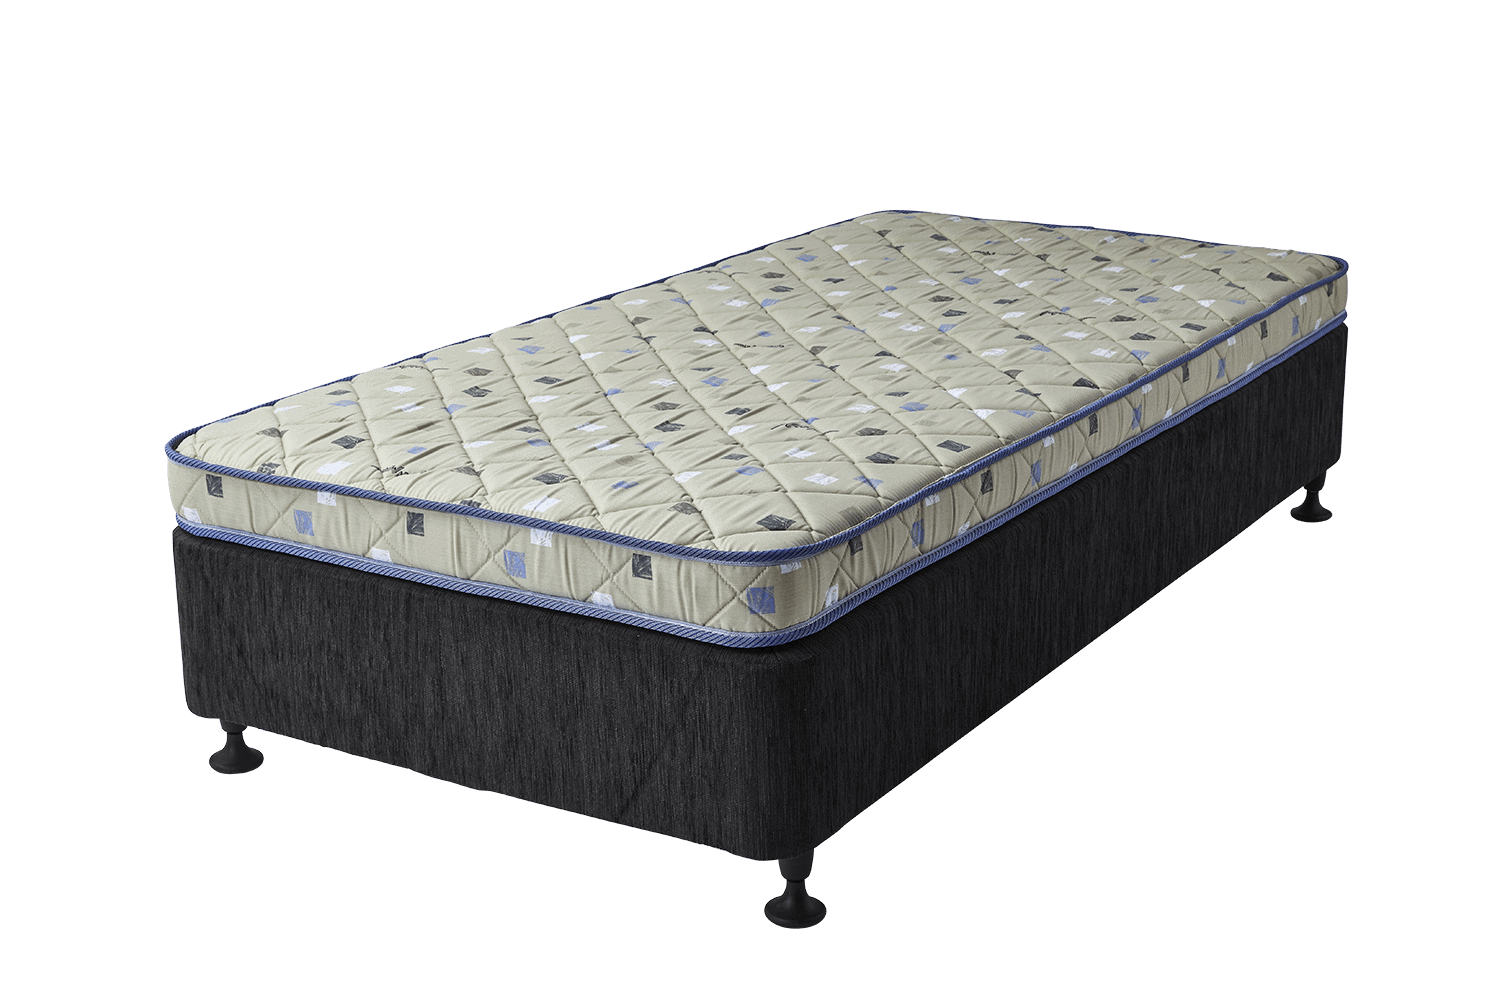 cot mattress sizes australia